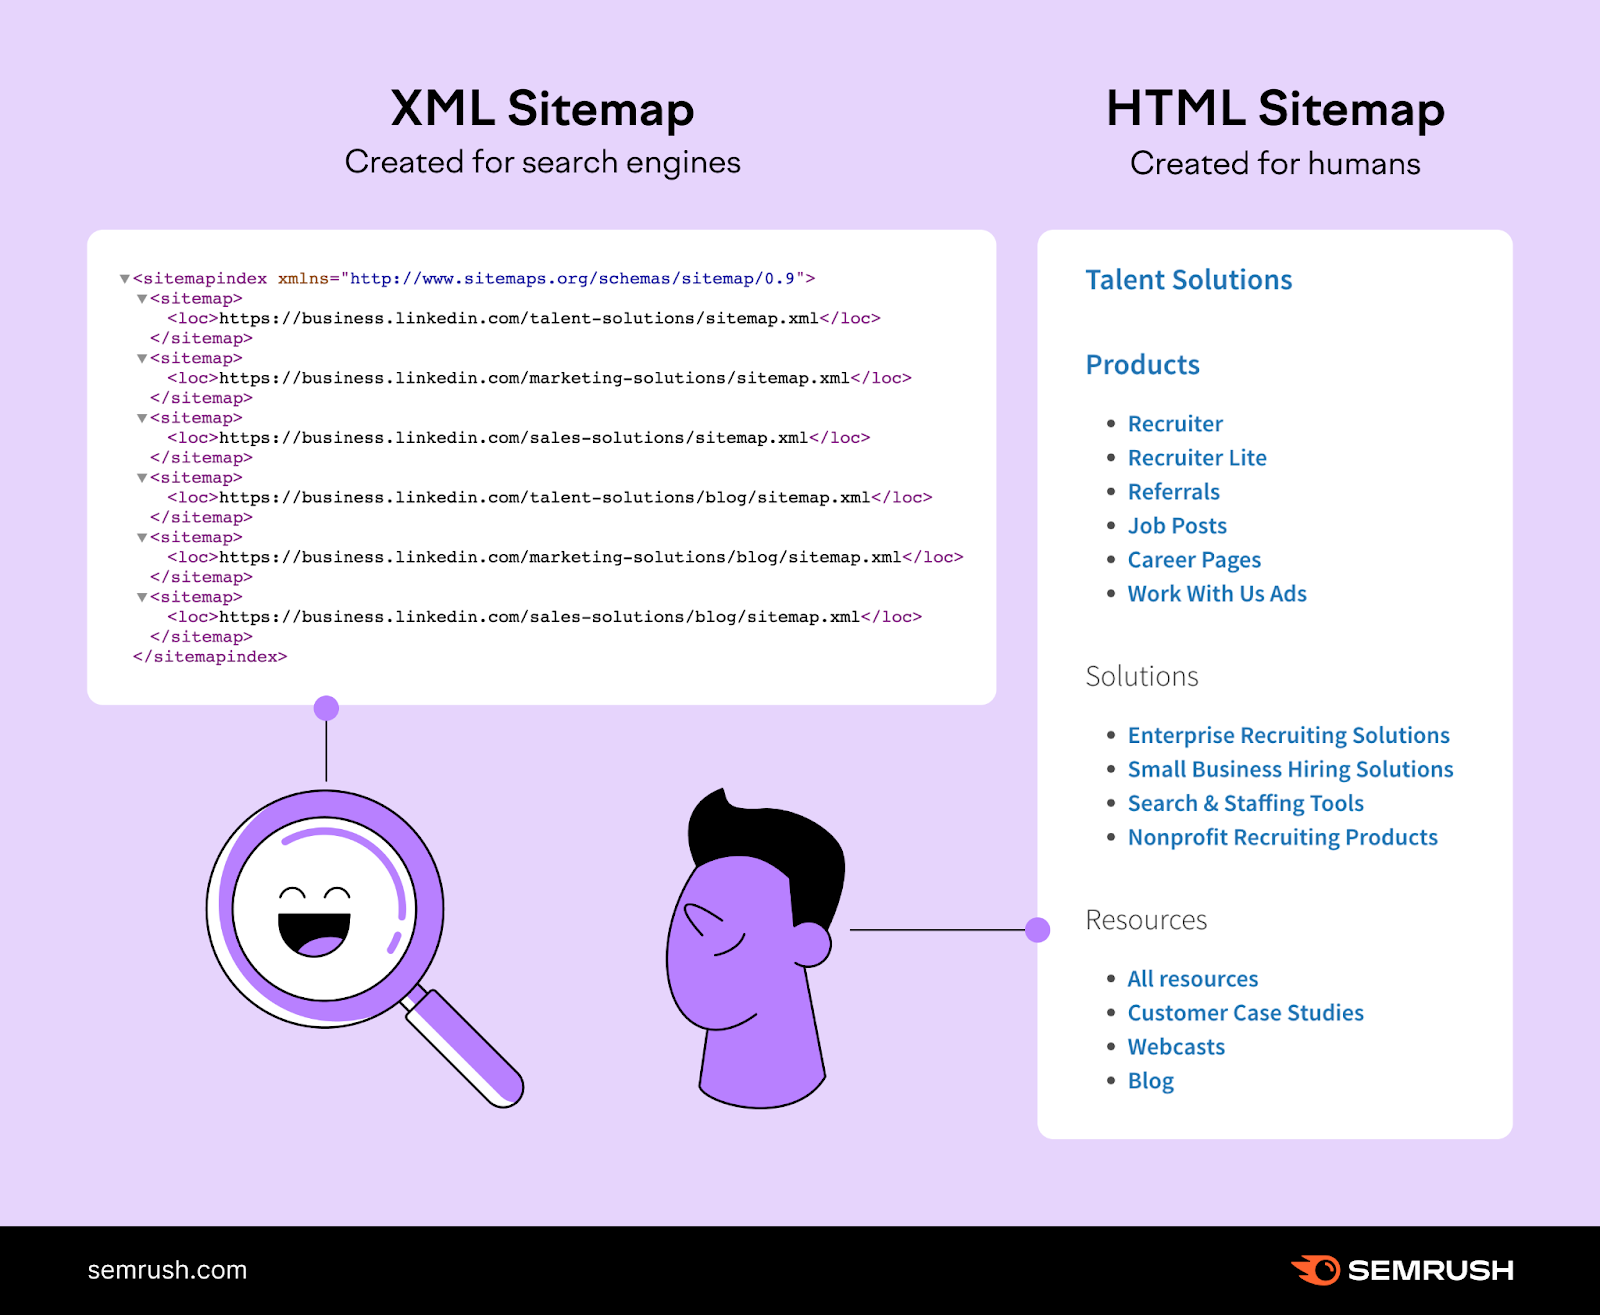 اینفوگرافیک تفاوت بین نقشه سایت XML و نقشه سایت HTML را نشان می دهد